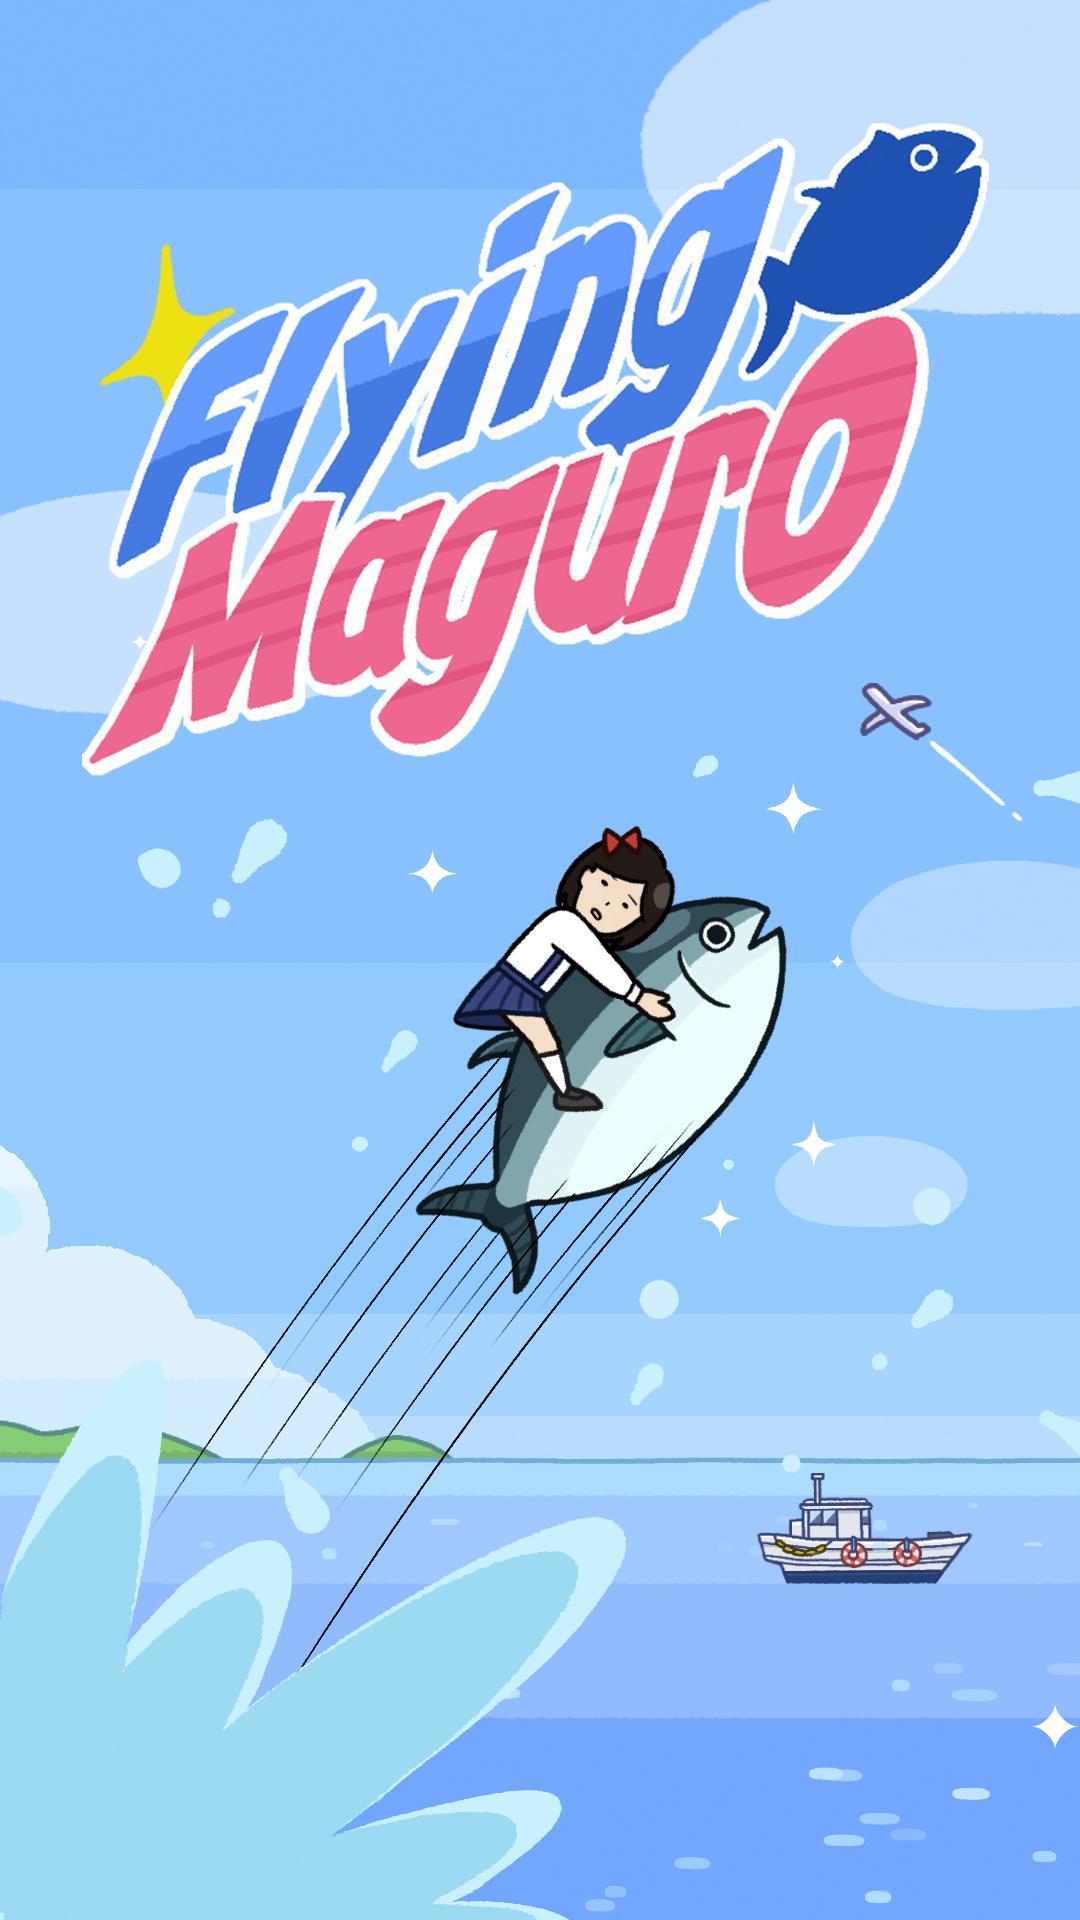 Screenshot 1 of Maguro voador 1.0.3